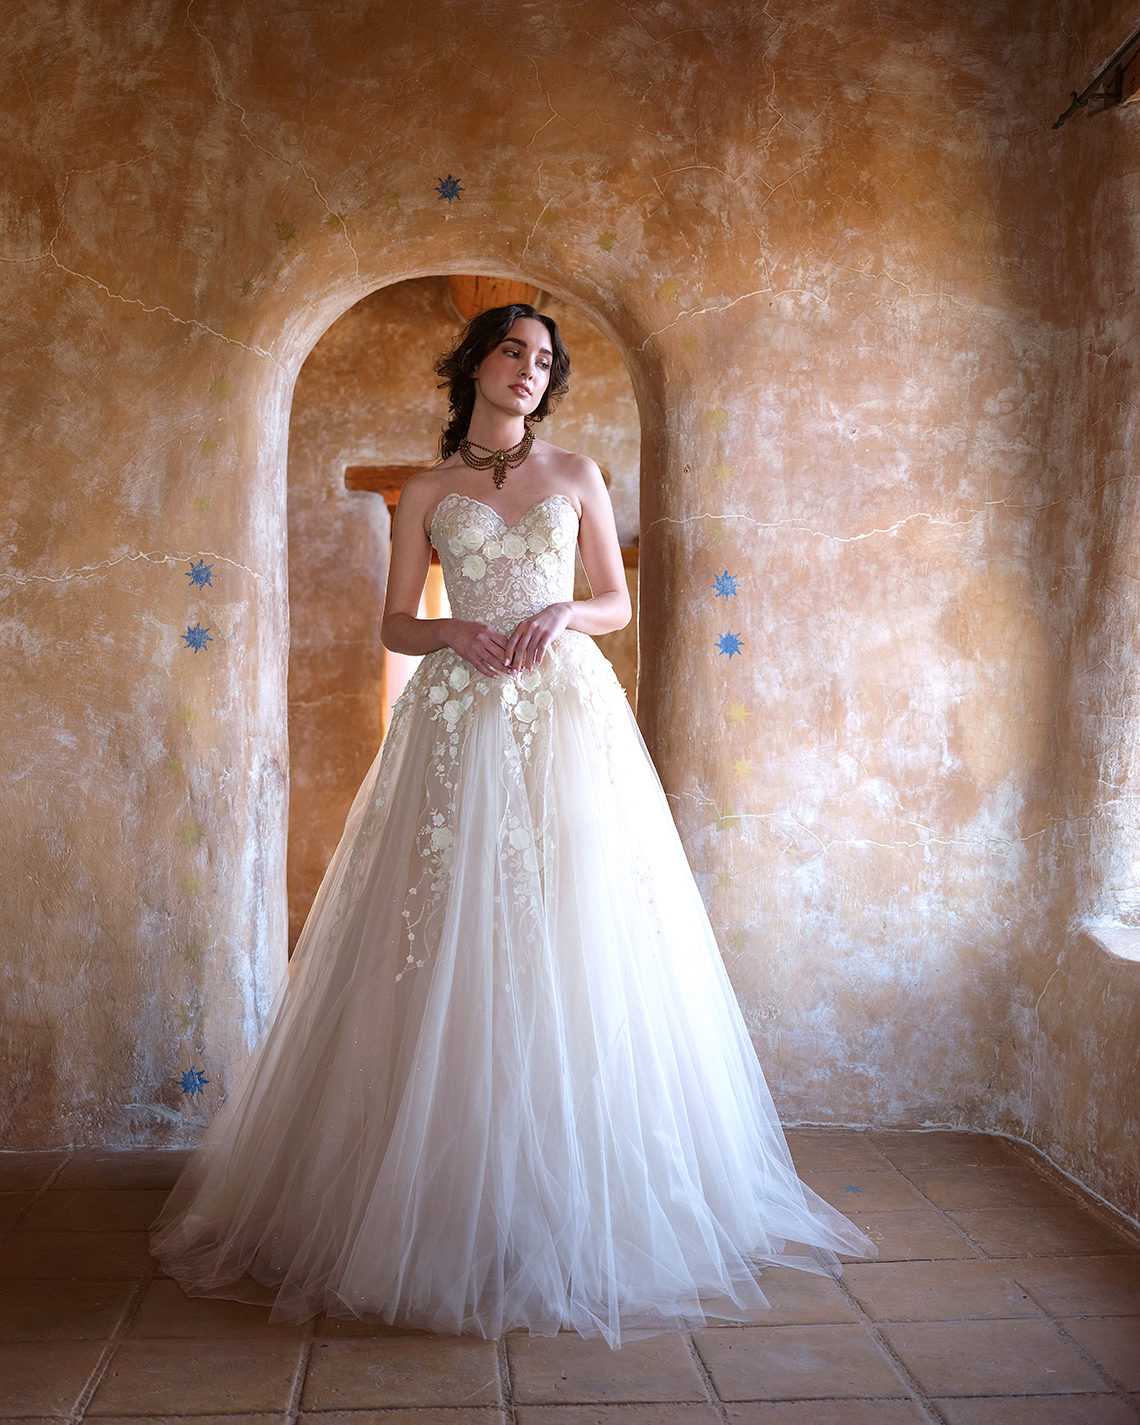 Vestidos de novia de alta costura personalizados de Ellen Wise Couture 2021 - Reflexiones nupciales - Vestido de Allesandra 1